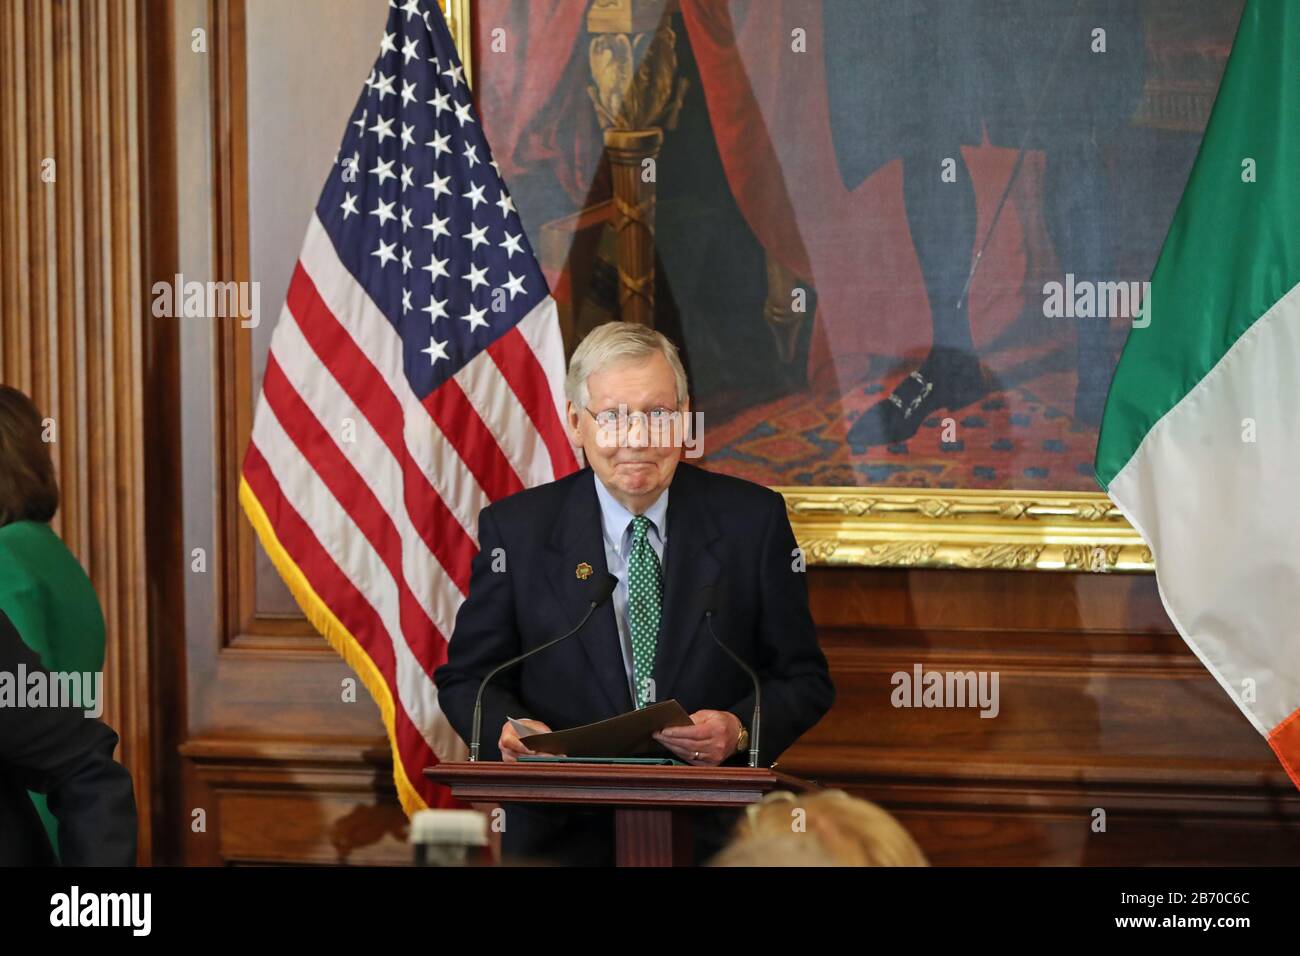 Le sénateur Mitch McConnell prononce un discours à la présidence???s déjeuner au Capitole à Washington DC lors de la visite de Taoiseach aux États-Unis. Banque D'Images